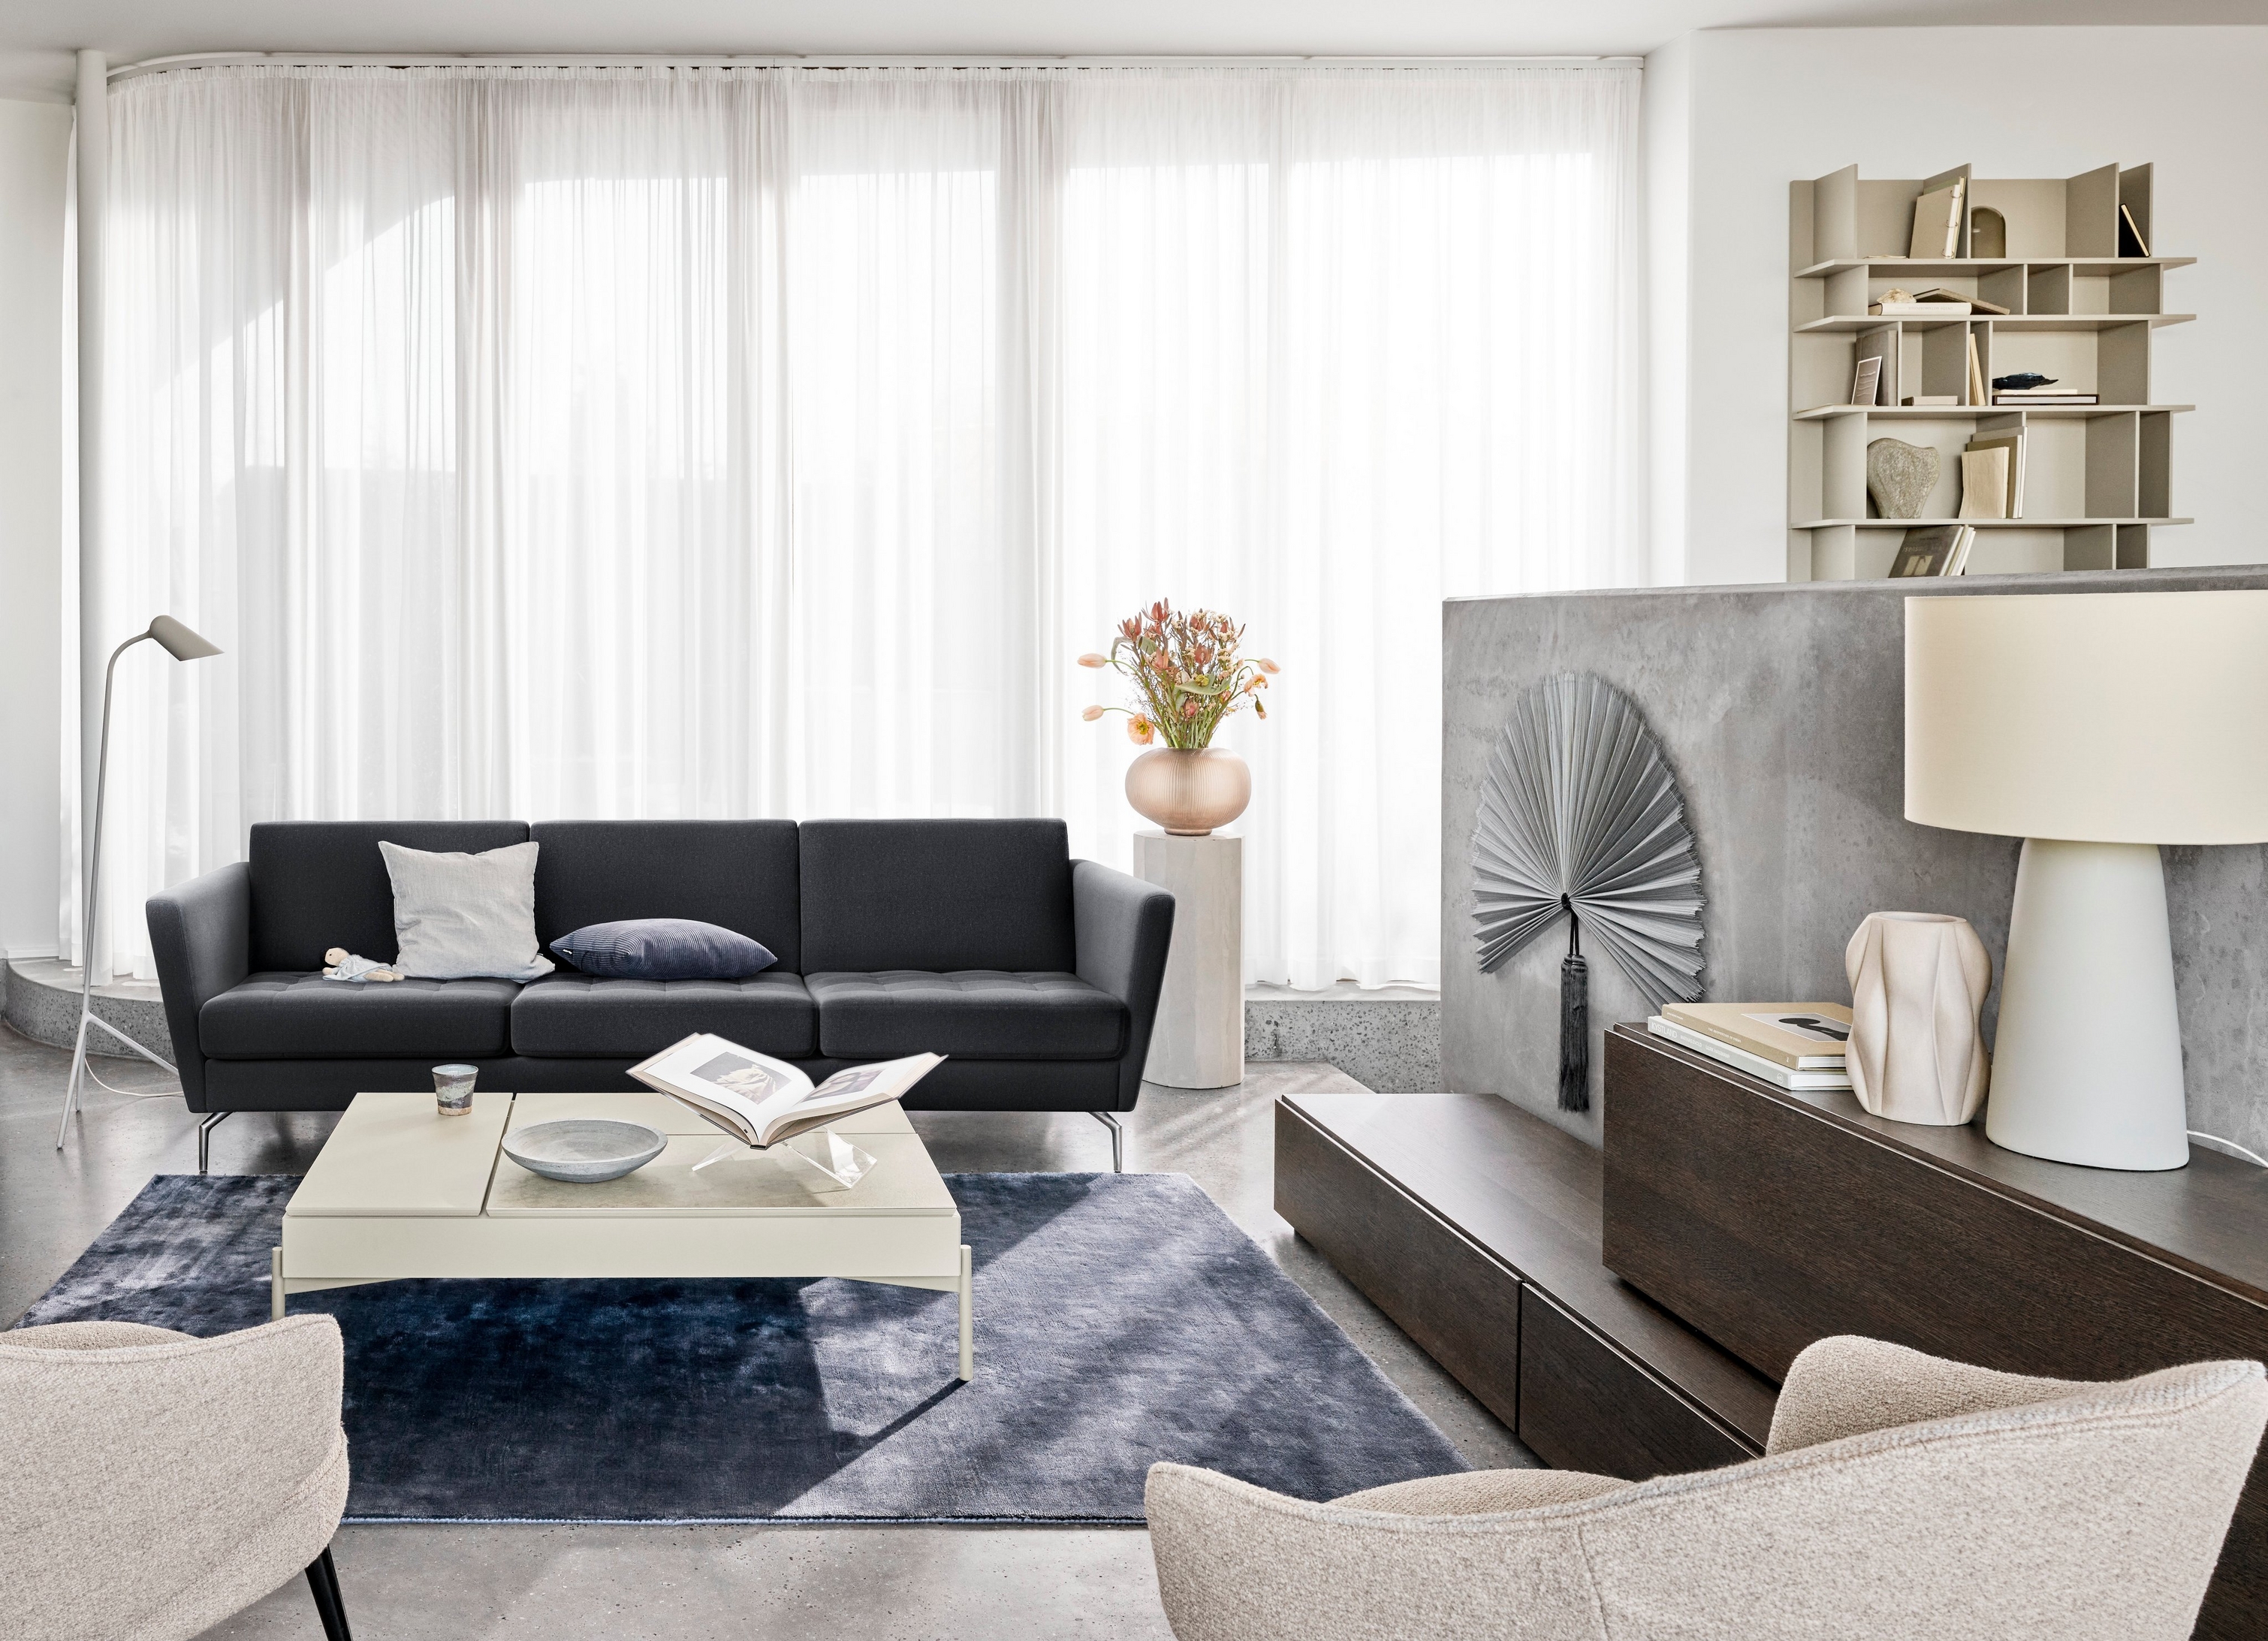 Un salon moderne avec un canapé noir, des chaises, des rideaux transparents et des éléments décoratifs.